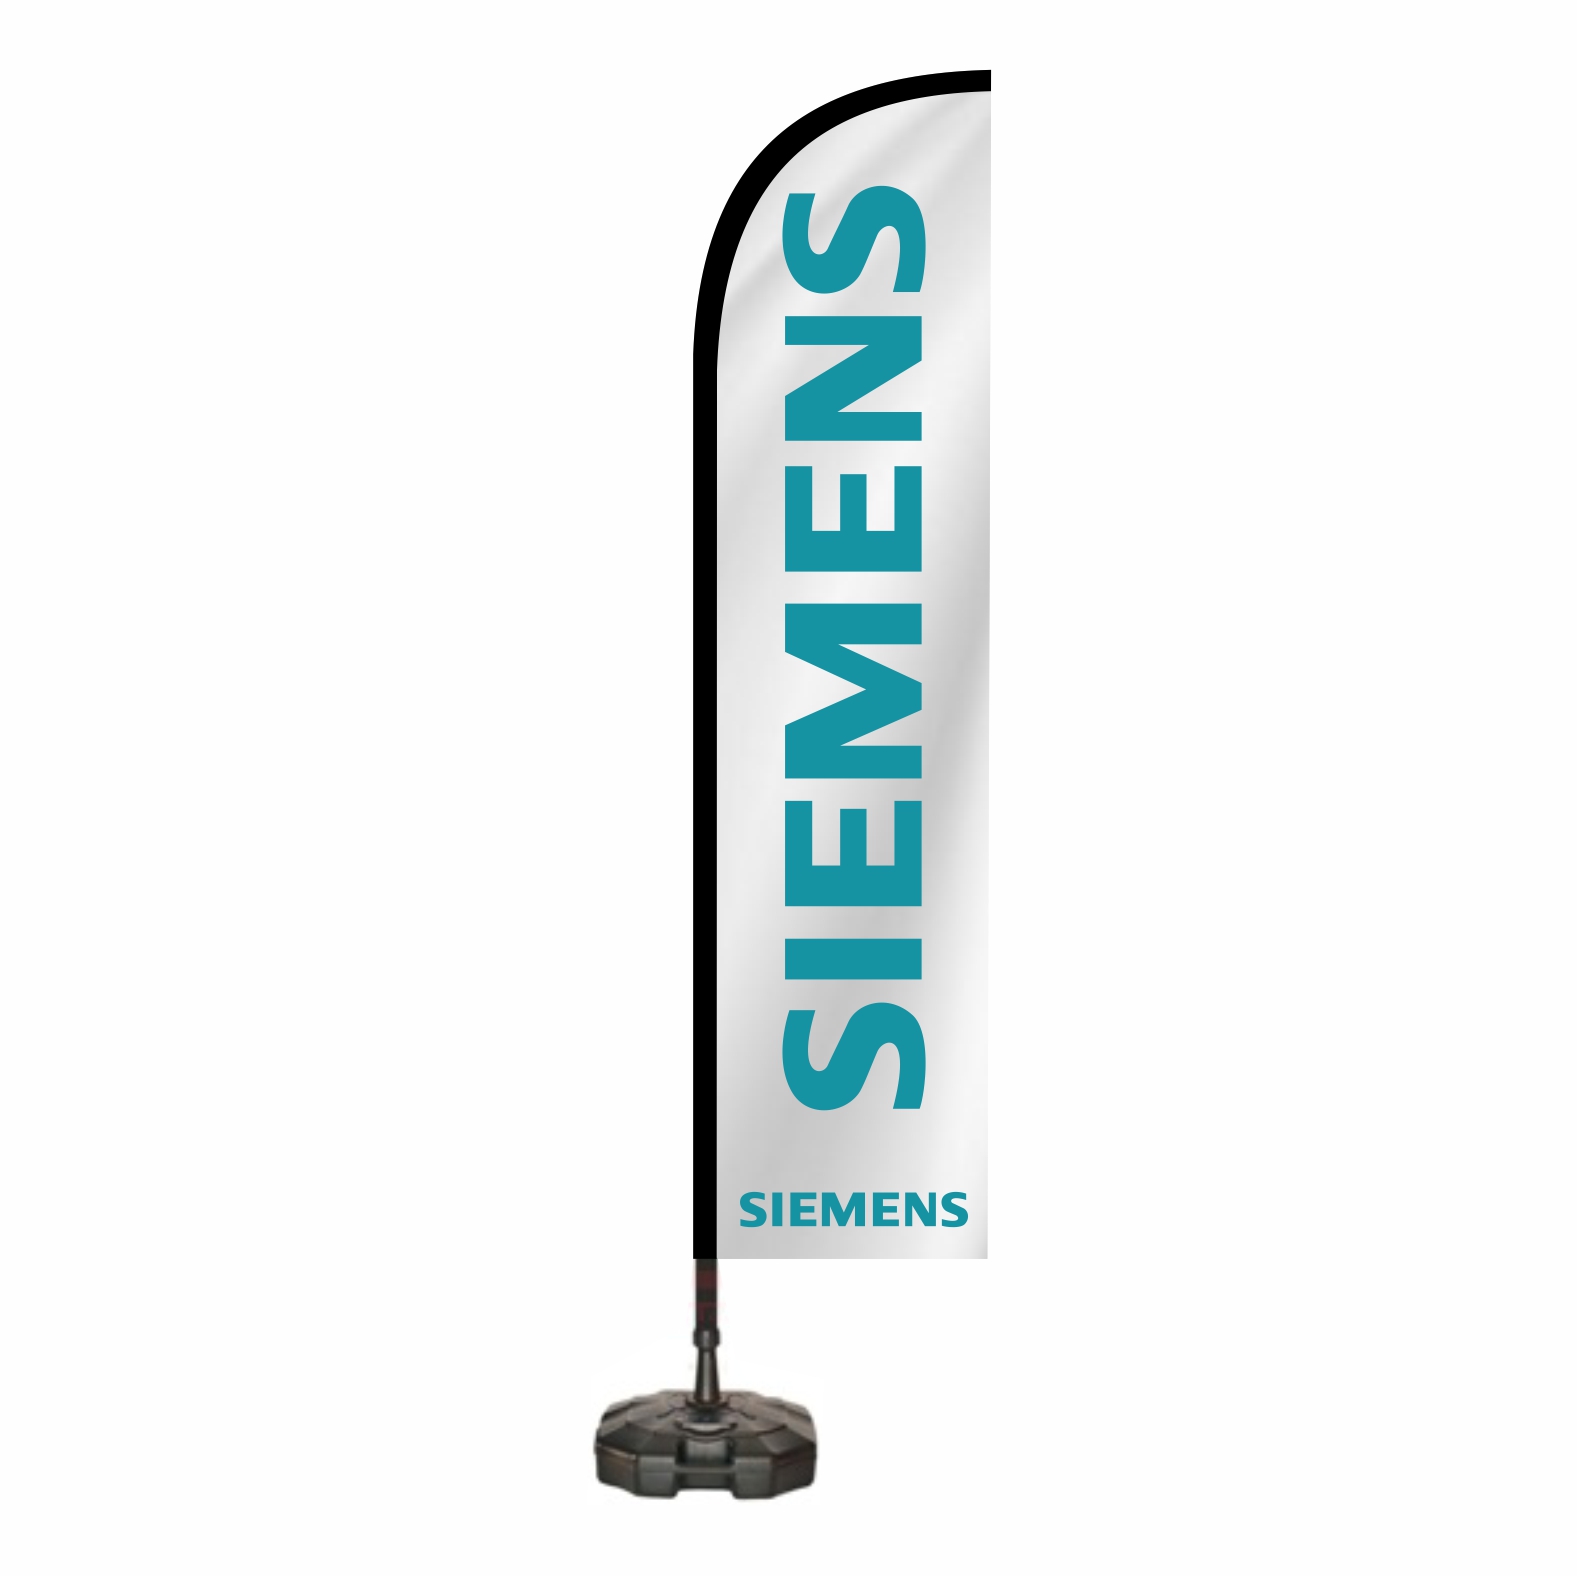 Siemens Oltal Bayra retimi ve Sat